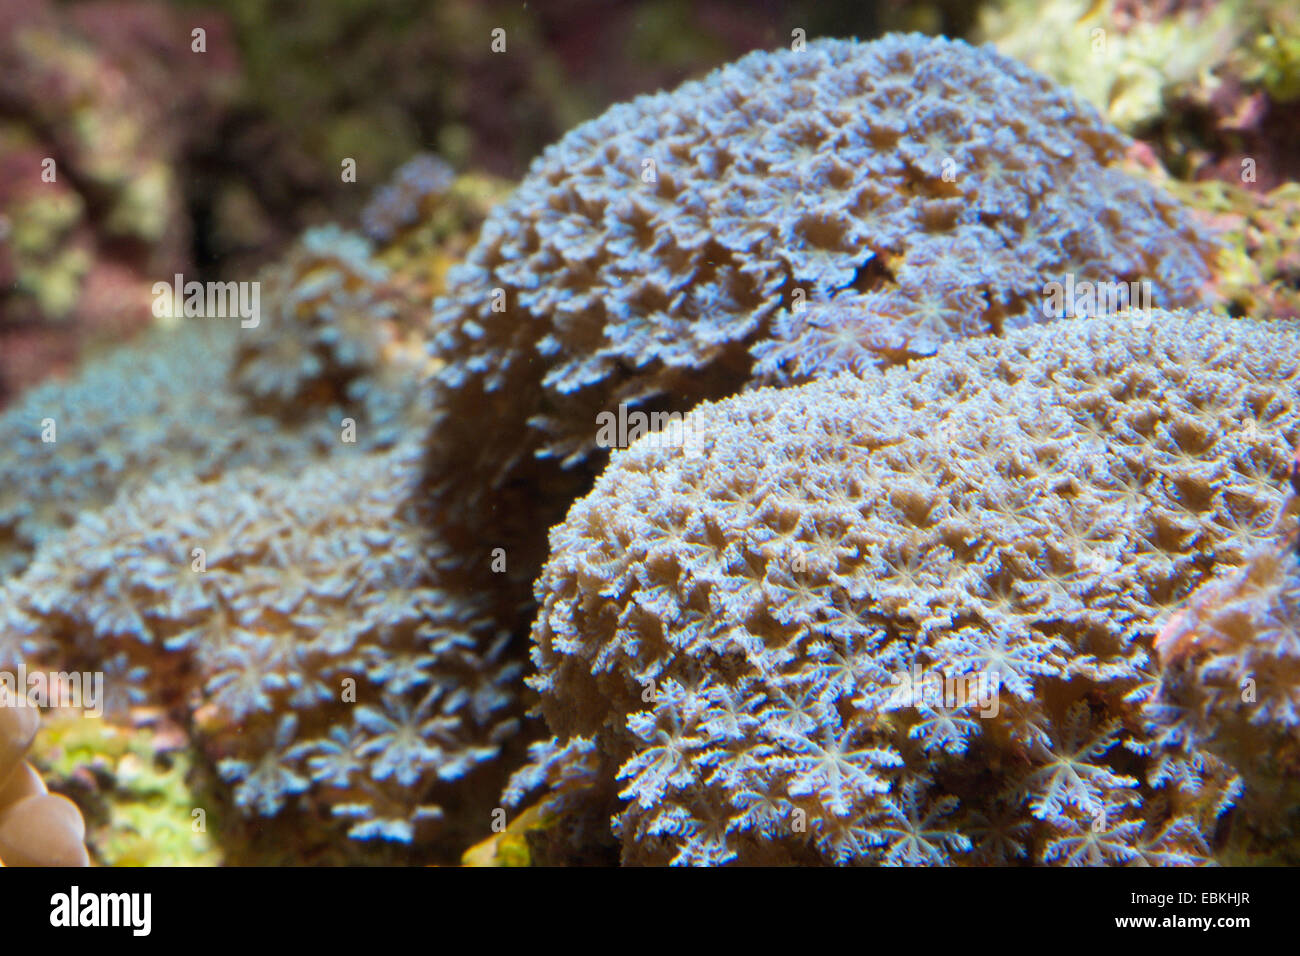 Cornucopic coral, Tiny soft coral (Cornularia cornucopiae), colony Stock Photo